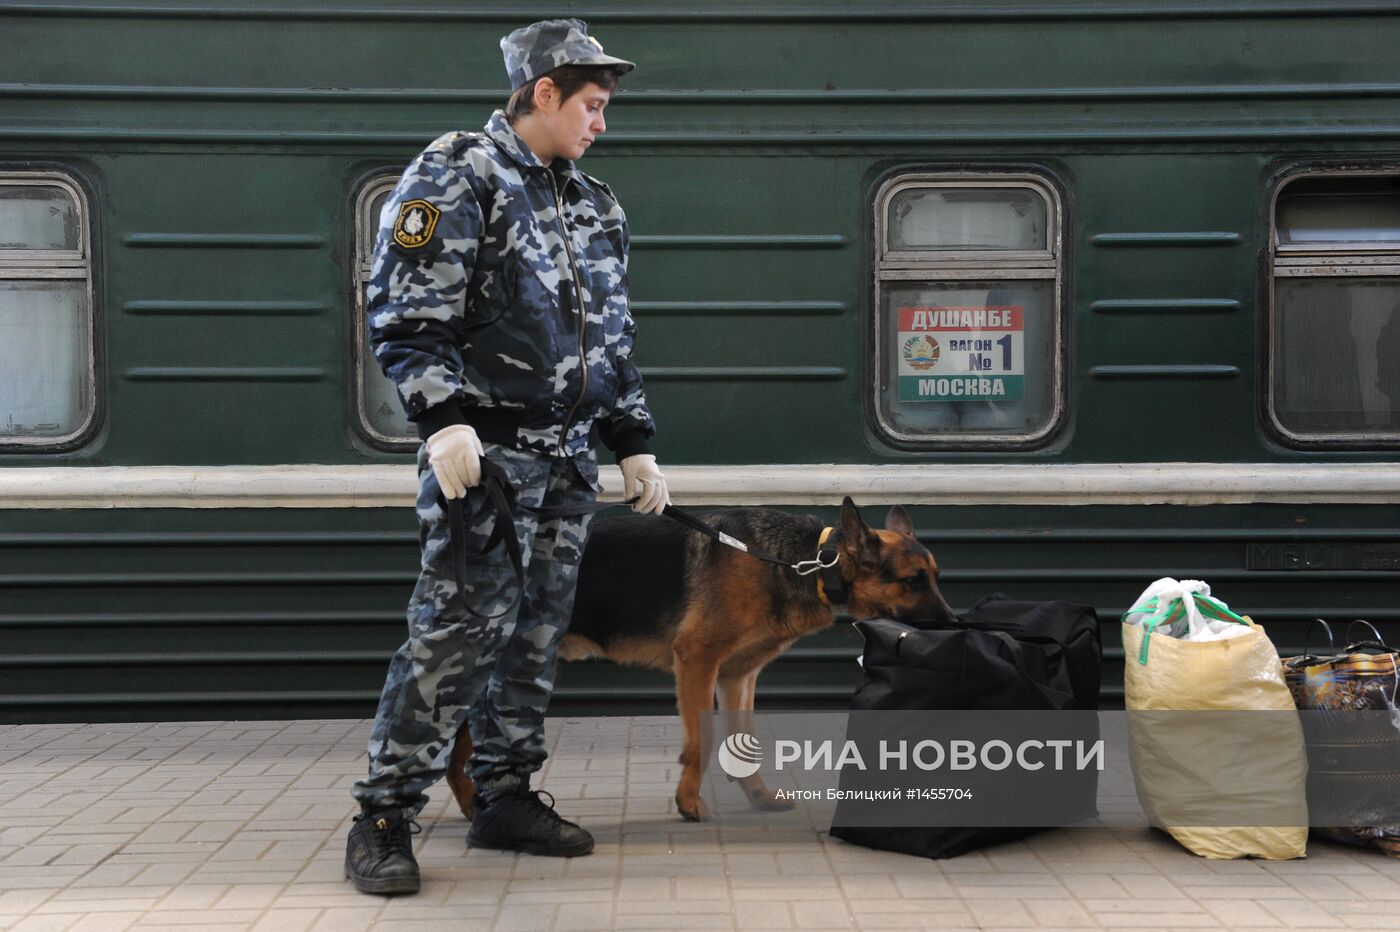 Перронный контроль пассажиров поезда Москва-Душанбе